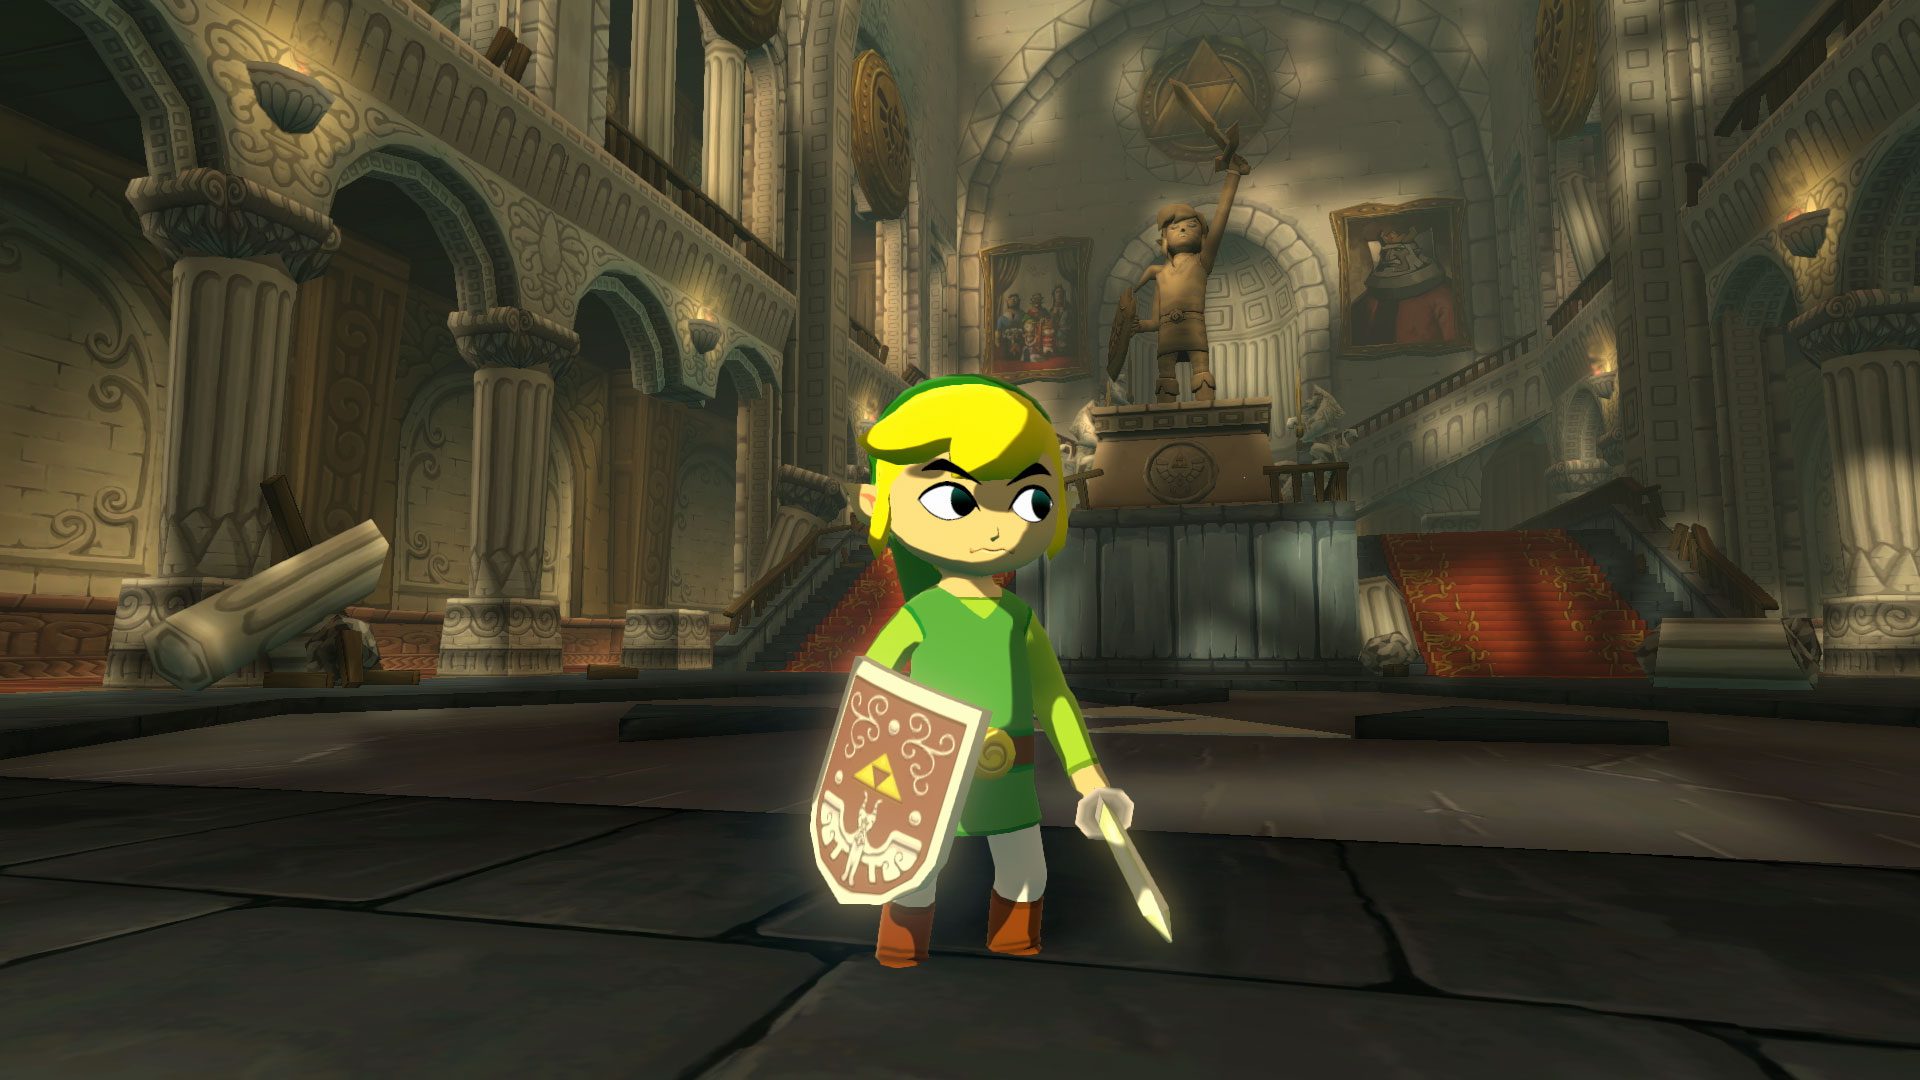 Zelda: Wind Waker HD - Gameplay & New Features Trailer (Wii U